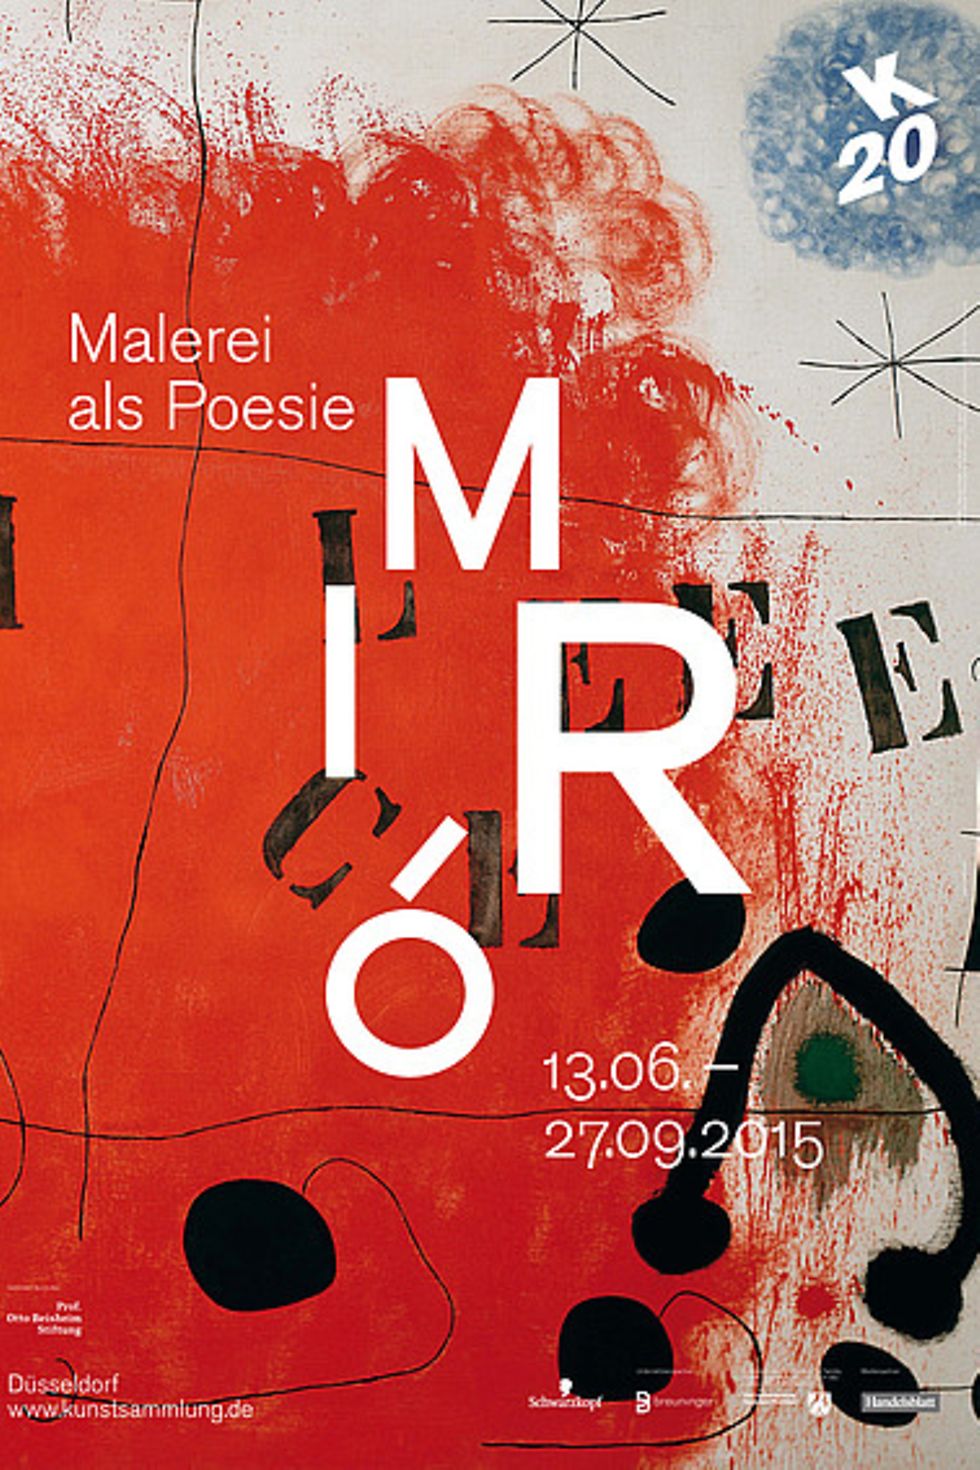 Ausstellung „Miró – Malerei als Poesie“ im K20 der Kunstsammlung Nordrhein-Westfalen in Düsseldorf